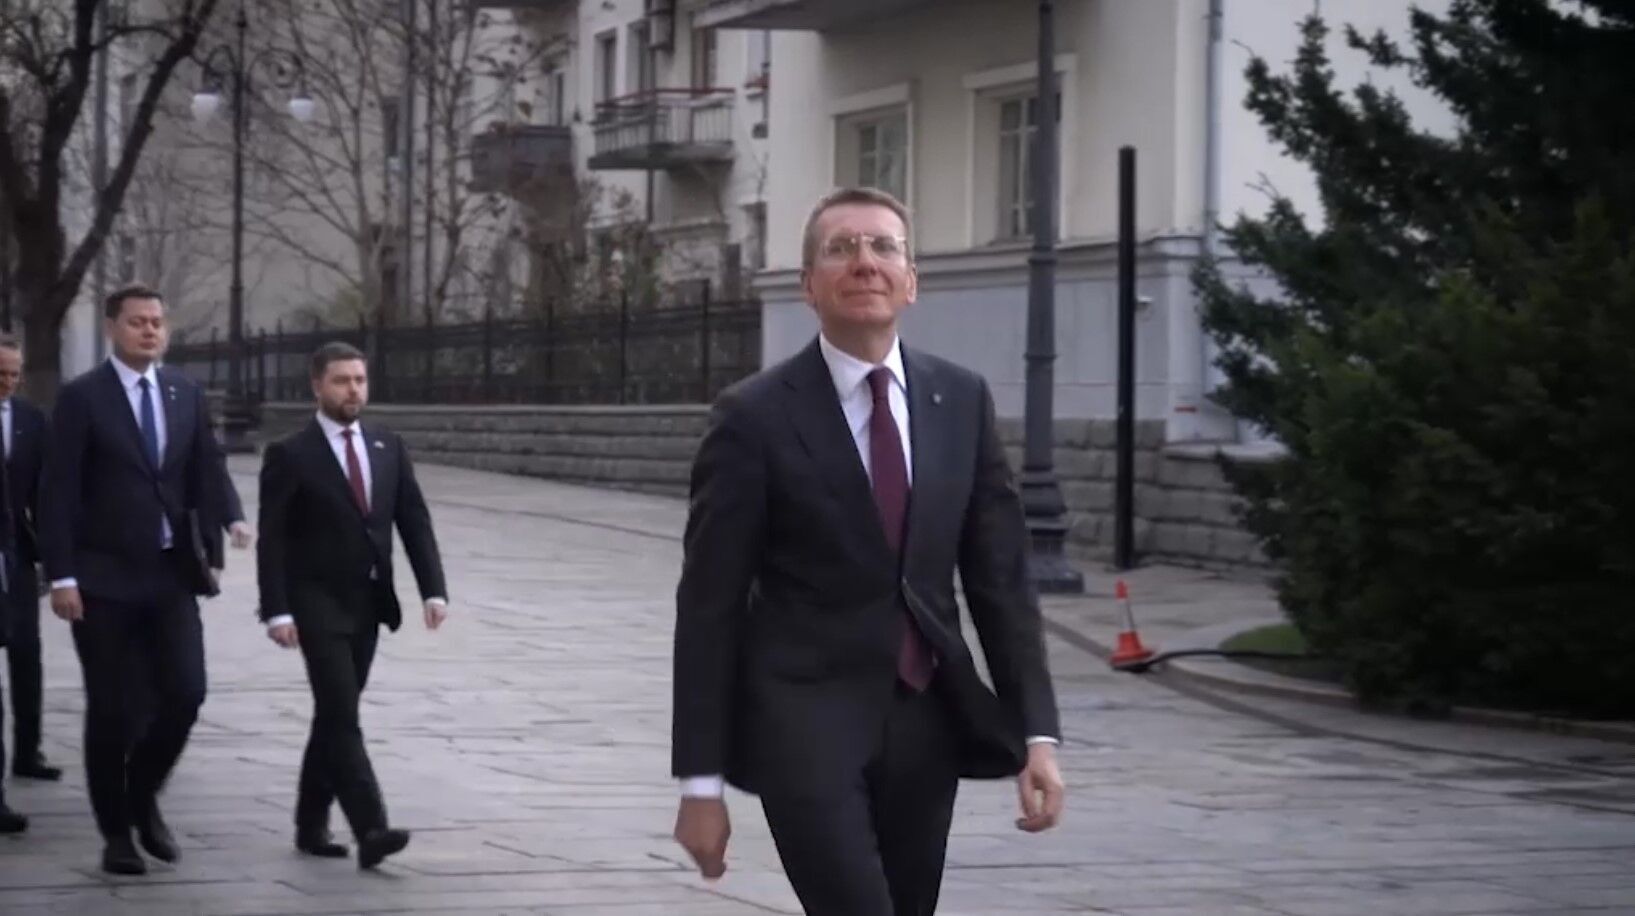 Говорили про вступ в ЄС і не тільки: президент Латвії зустрівся із Зеленським у Києві. Відео і подробиці переговорів